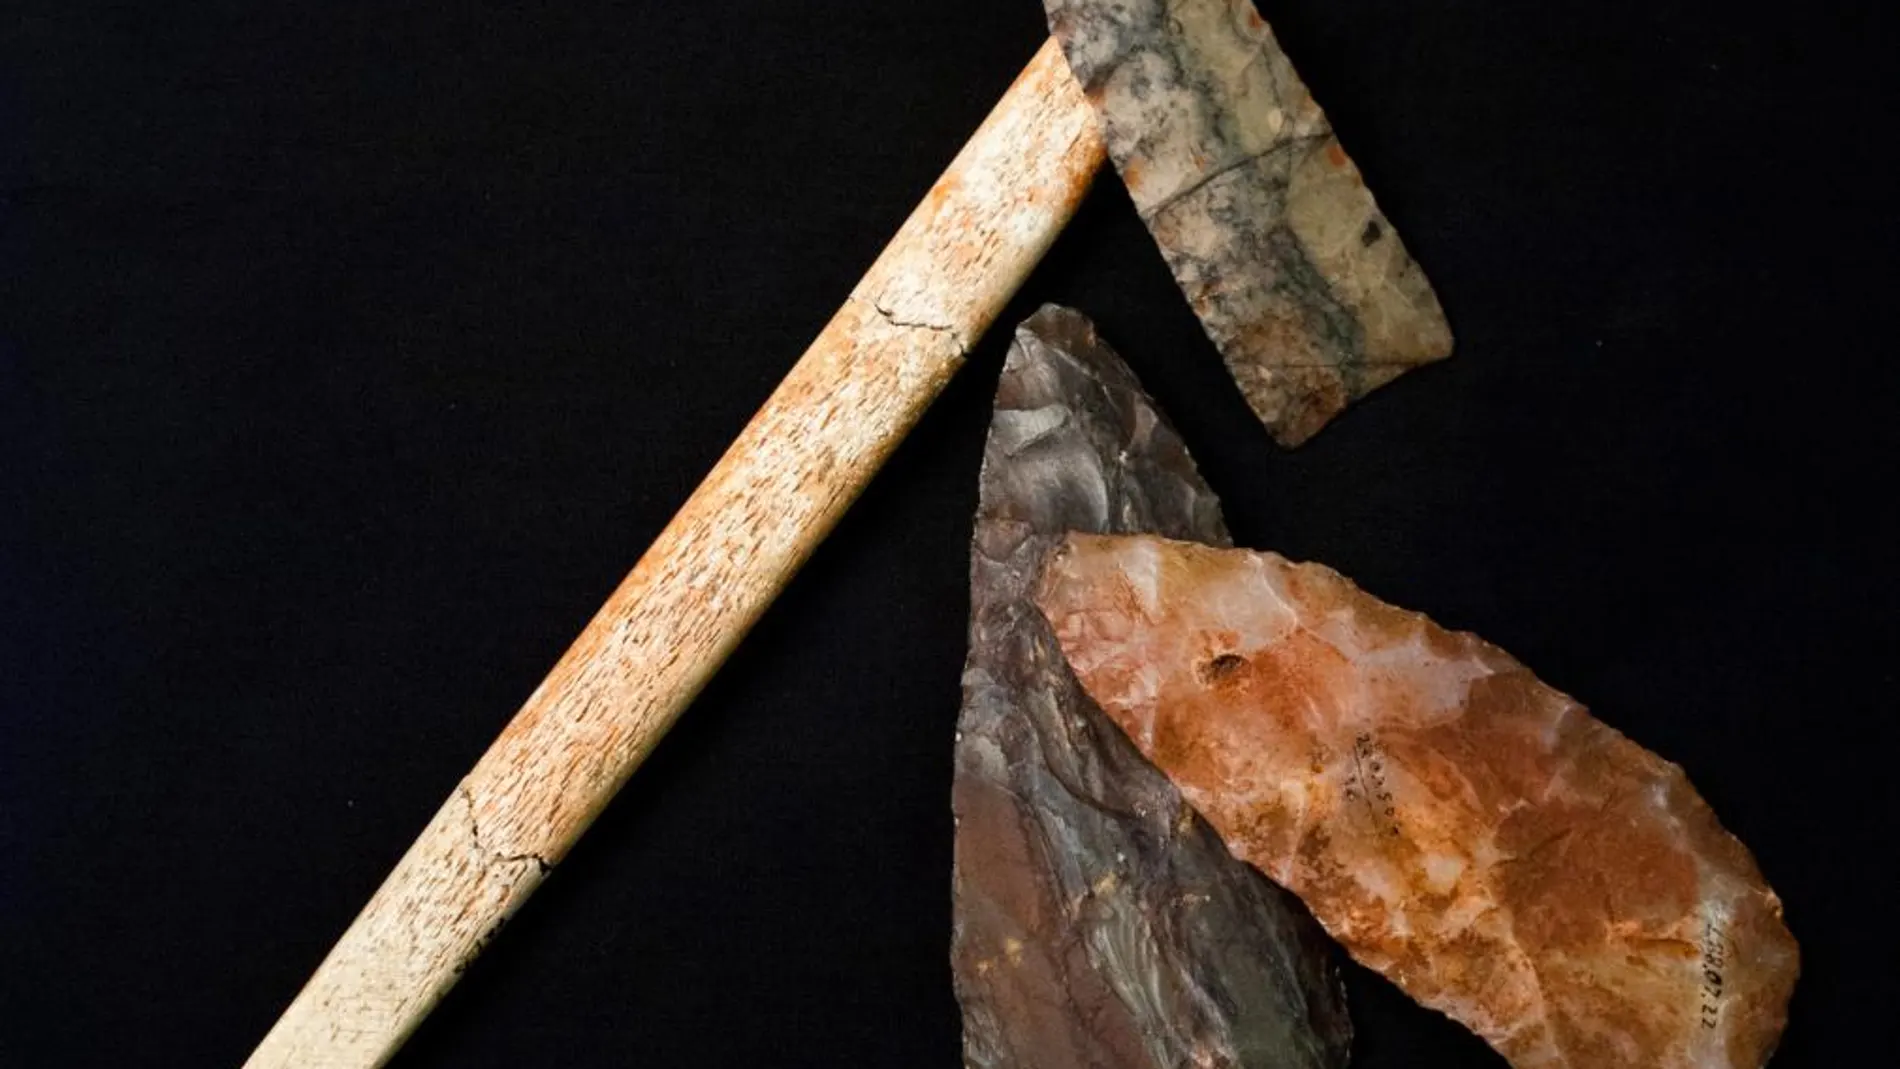 Utensilios encontrados en la tumba de la cultura Clovis, en Estados Unidos